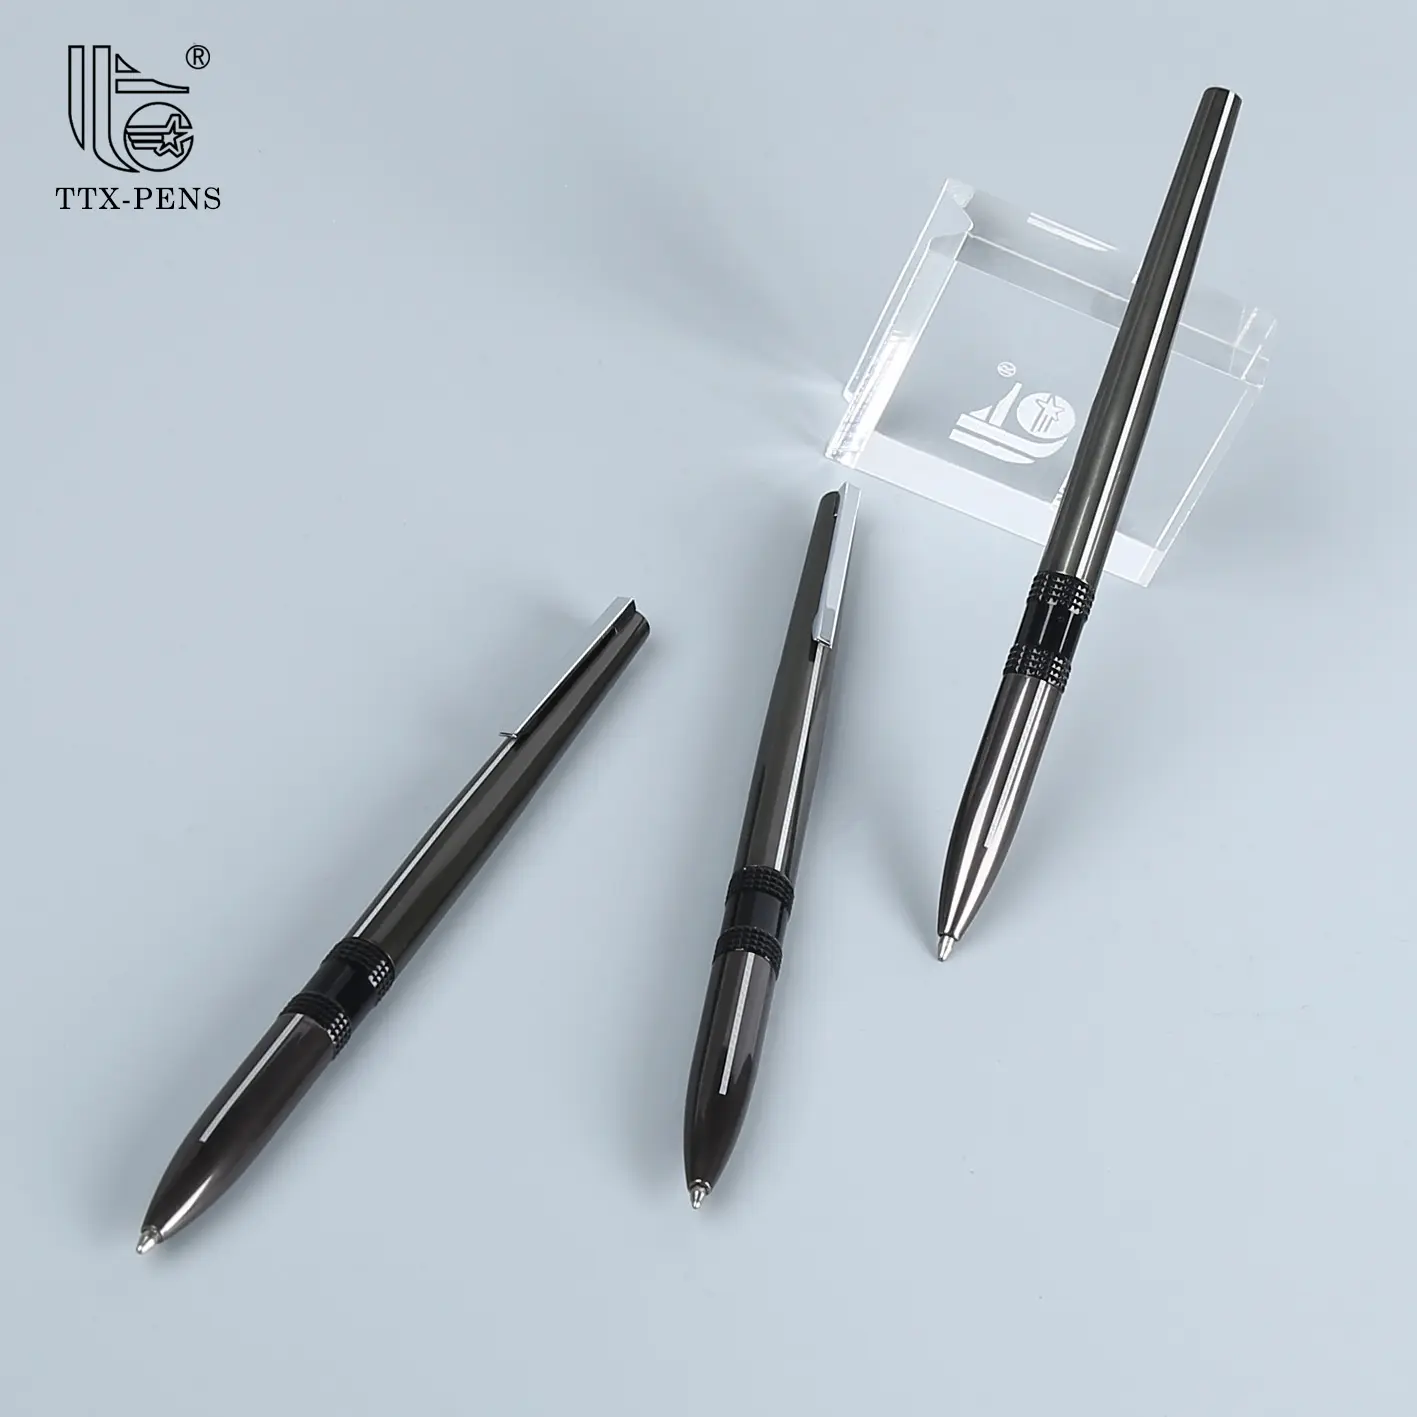 TTX yeni patentli benzersiz tasarım yüksek kalite özel logo ofis iş kalem OEM siyah ince metal kalem